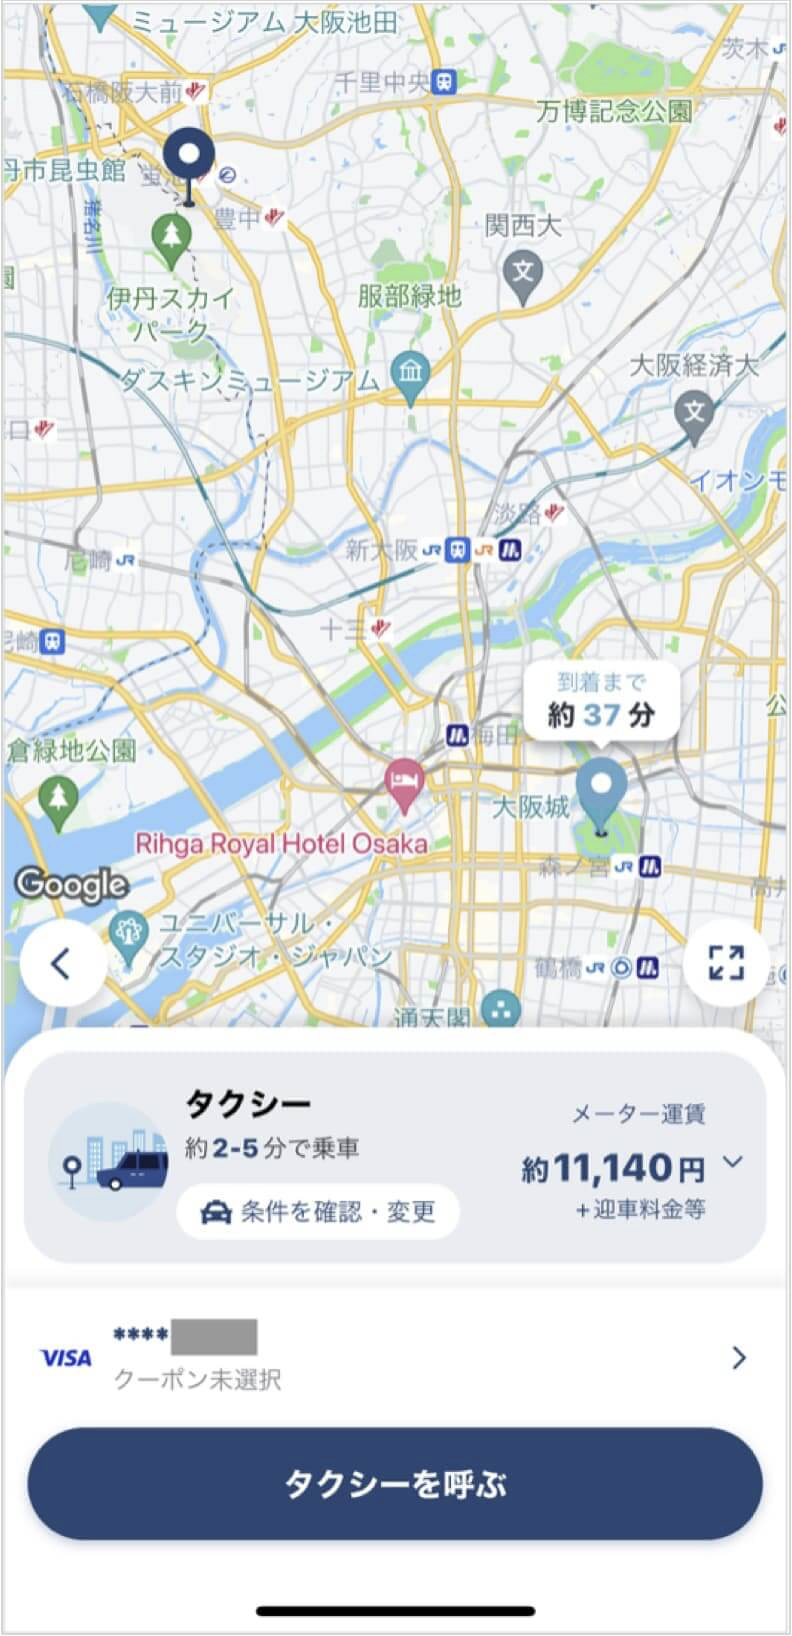 伊丹空港から大阪城までのタクシー料金・所要時間まとめ